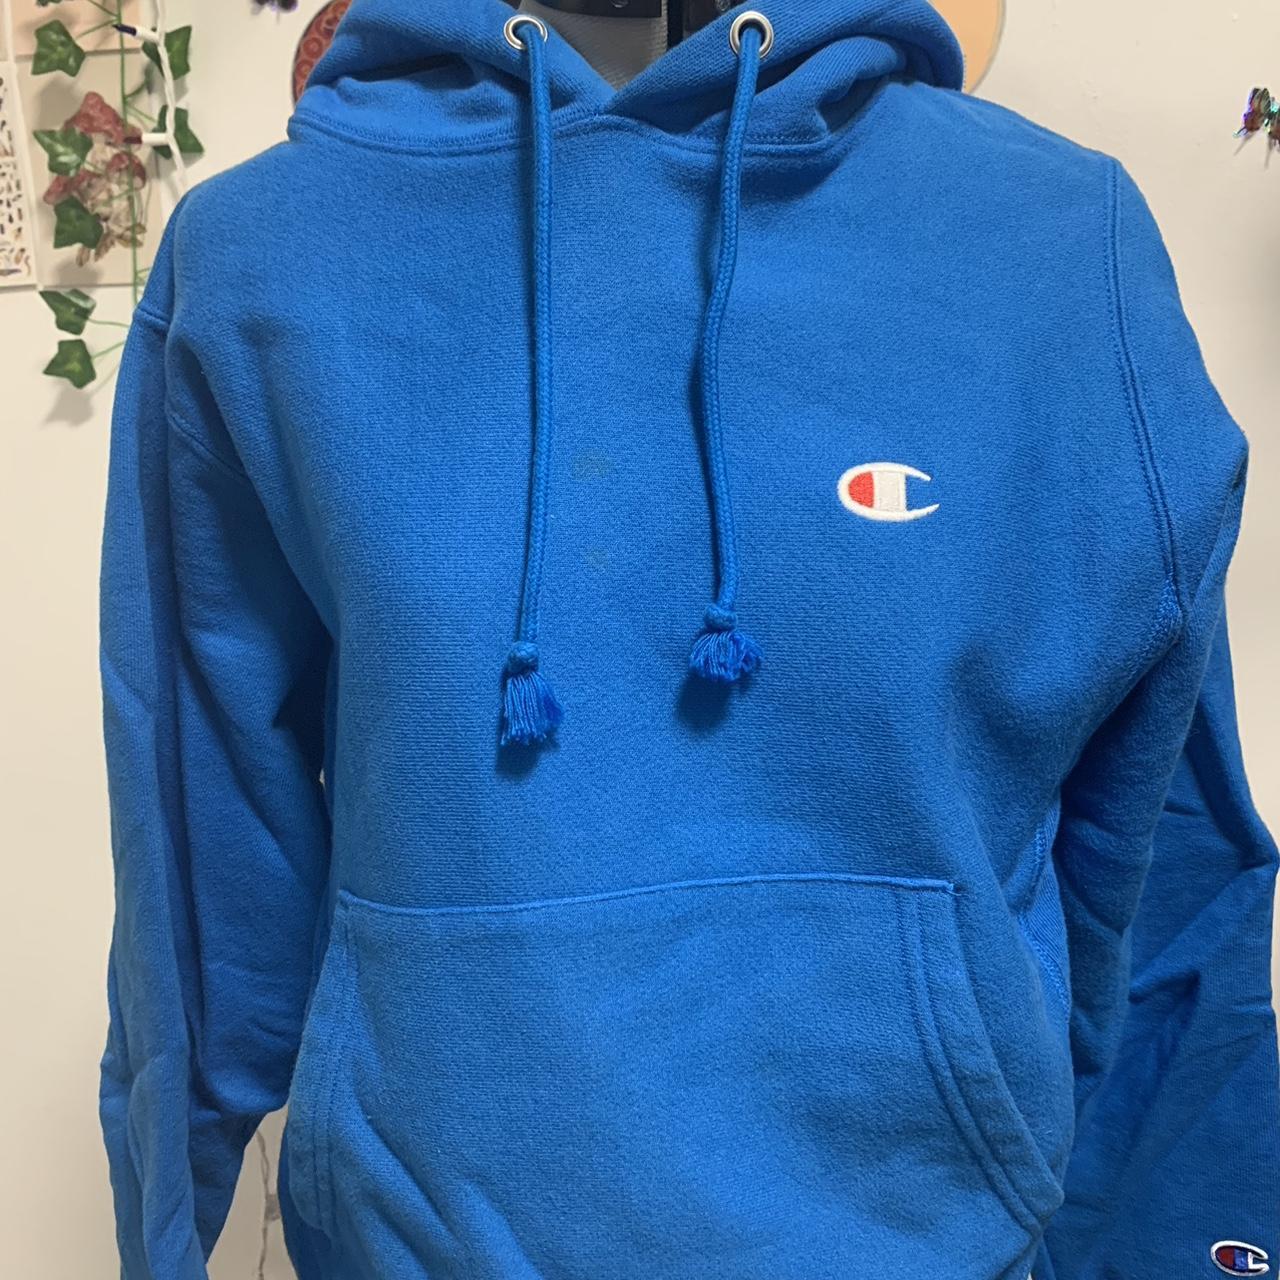 Blue champion hoodie - Depop